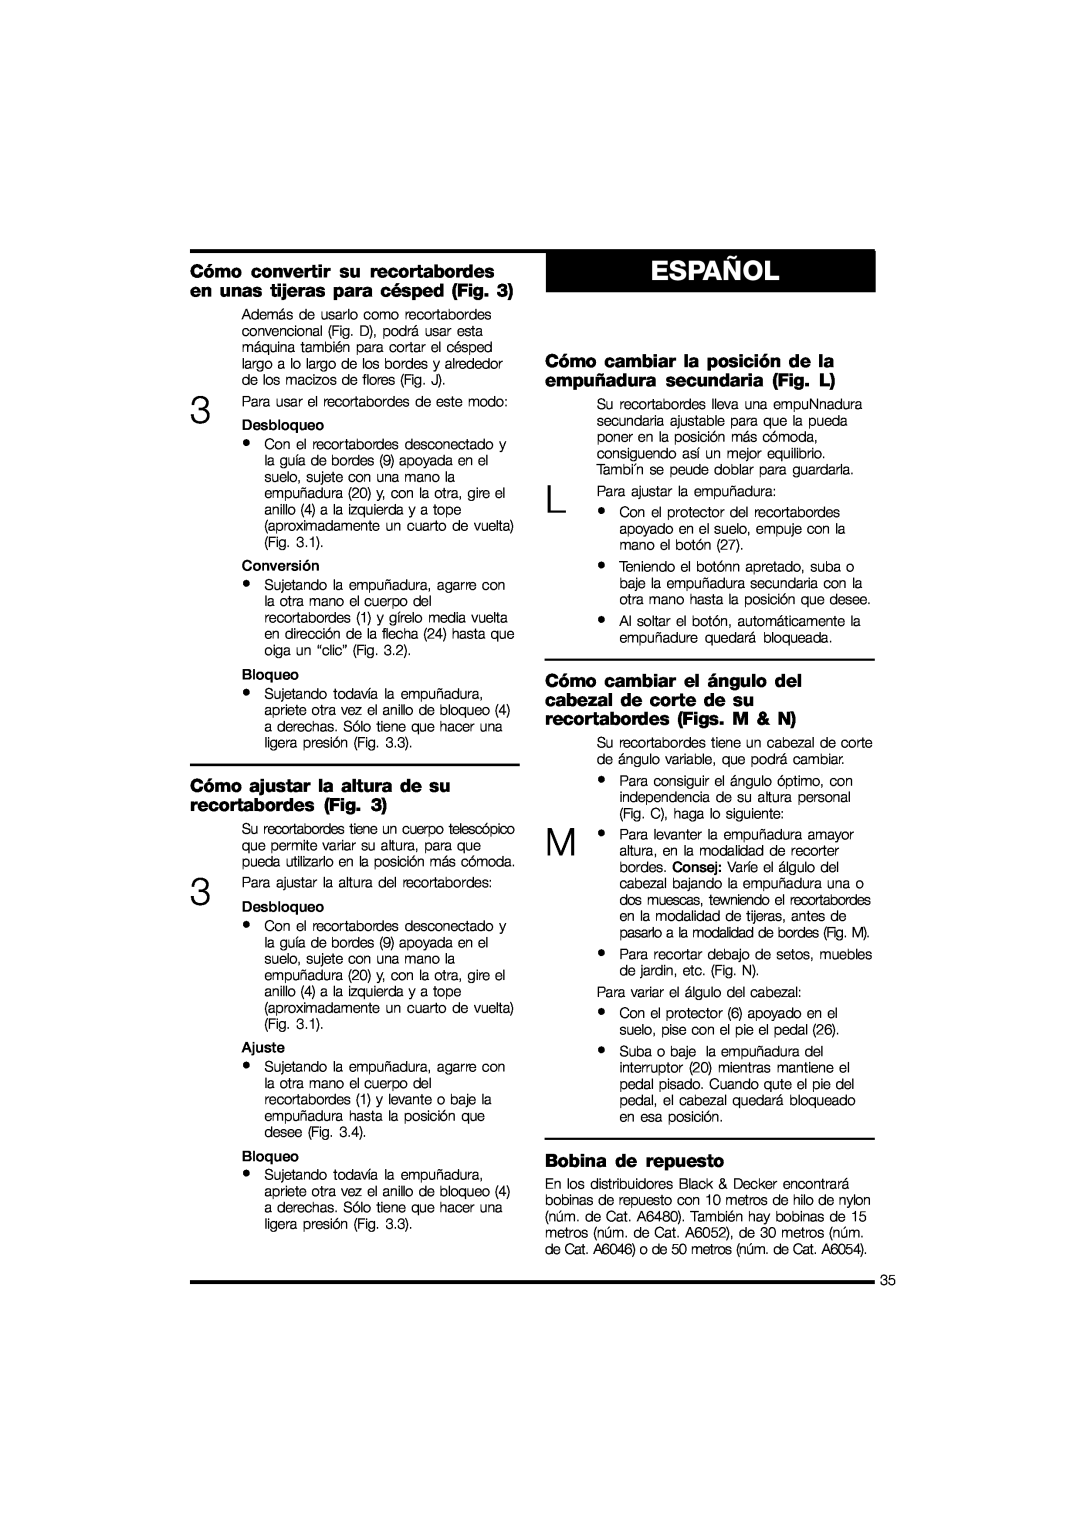 Black & Decker GL570 instruction manual Cómo ajustar la altura de su recortabordes Fig, Bobina de repuesto, Español 